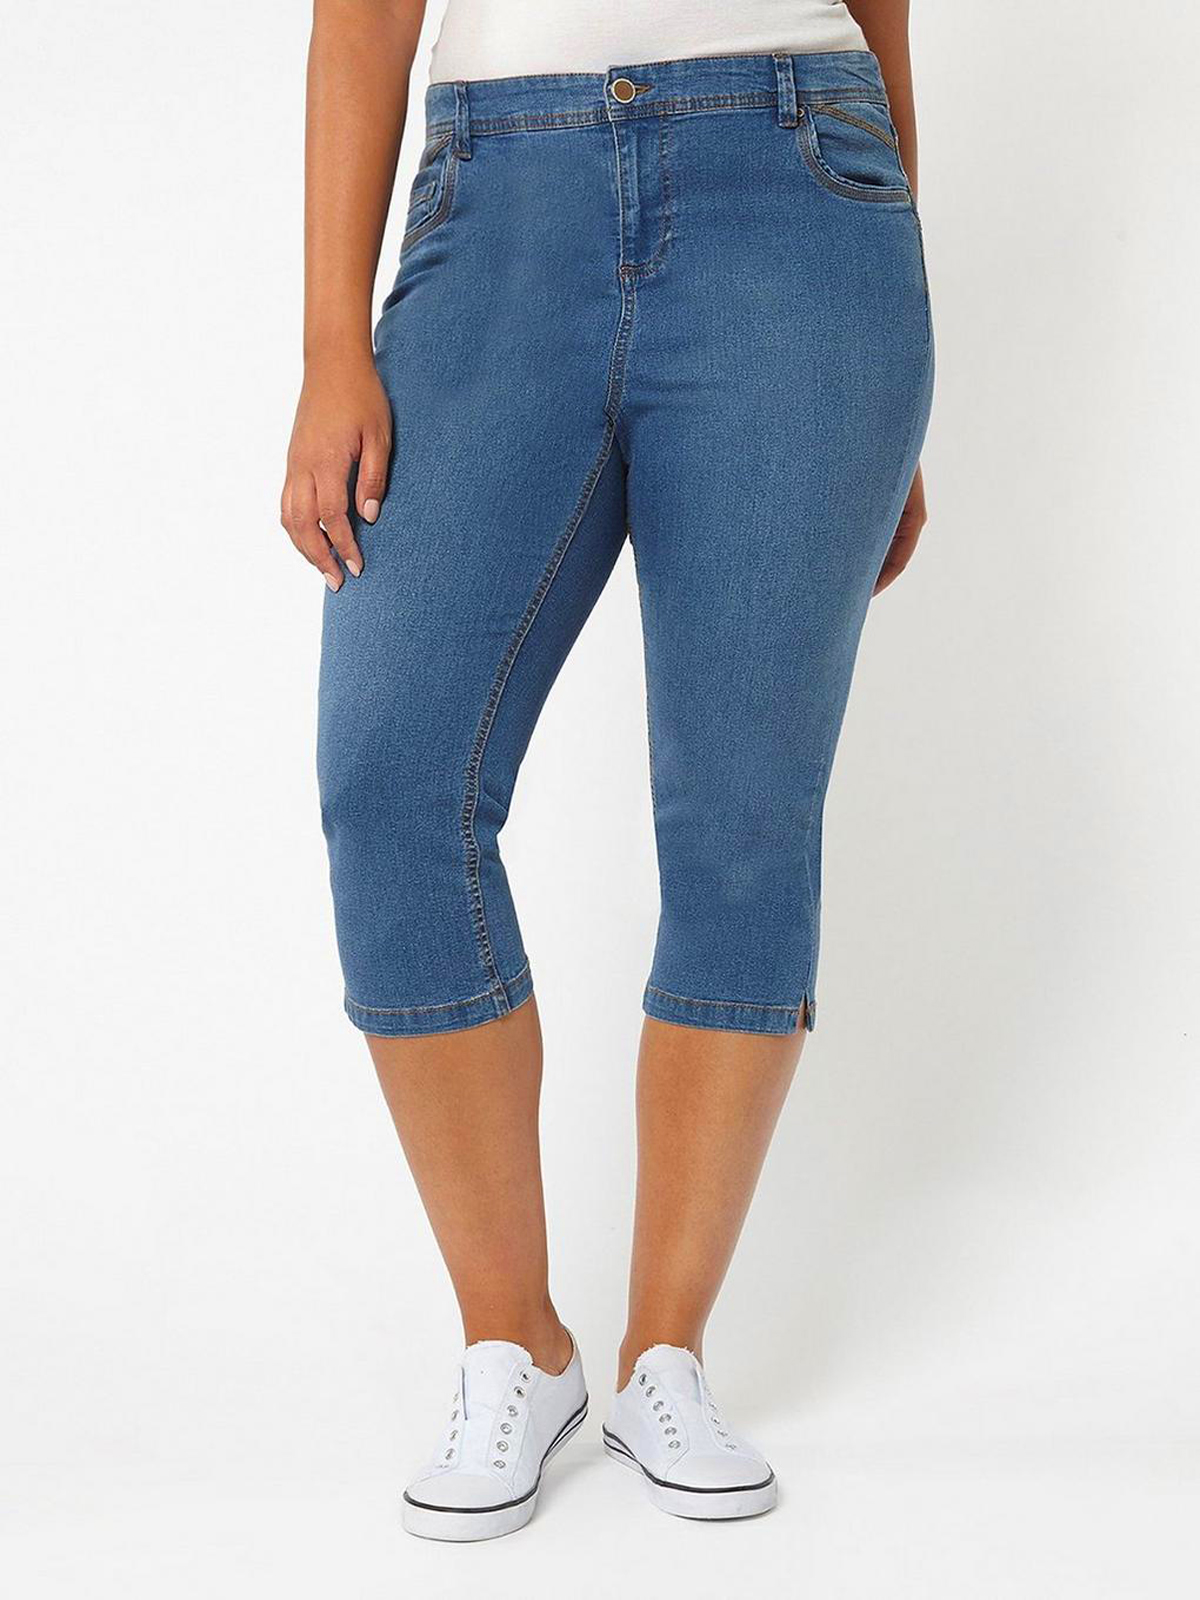 Denim Cotton Rich 5 Pocket Contrast Stitch Cropped Denim Jeans Plus Size